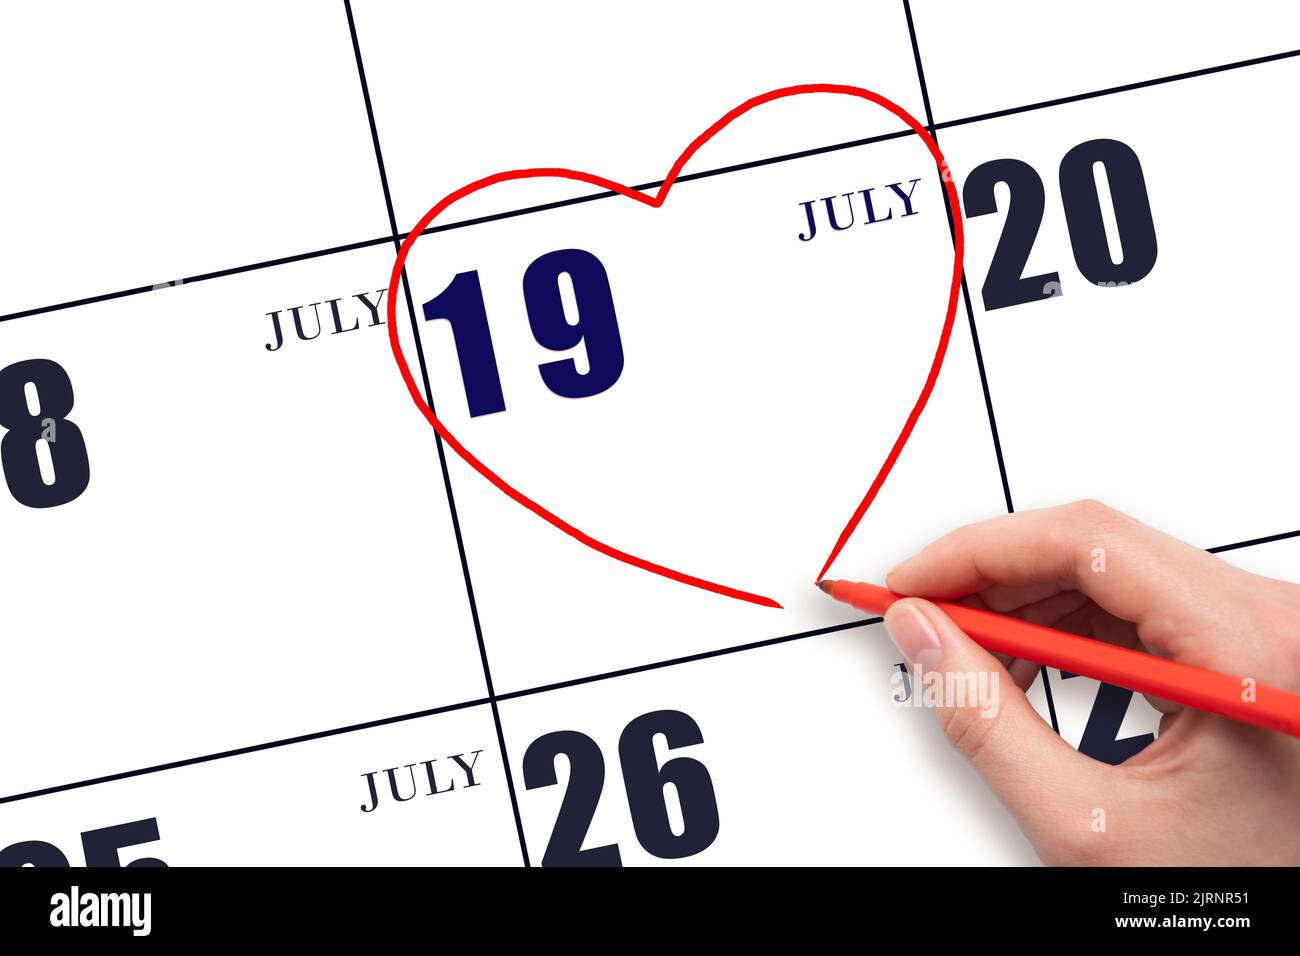 19th° giorno di luglio. La mano di una donna che disegna una forma a cuore rosso alla data di calendario del 19 luglio. Il cuore come simbolo dell'amore. Mese estivo. Giorno dell'anno co Foto Stock